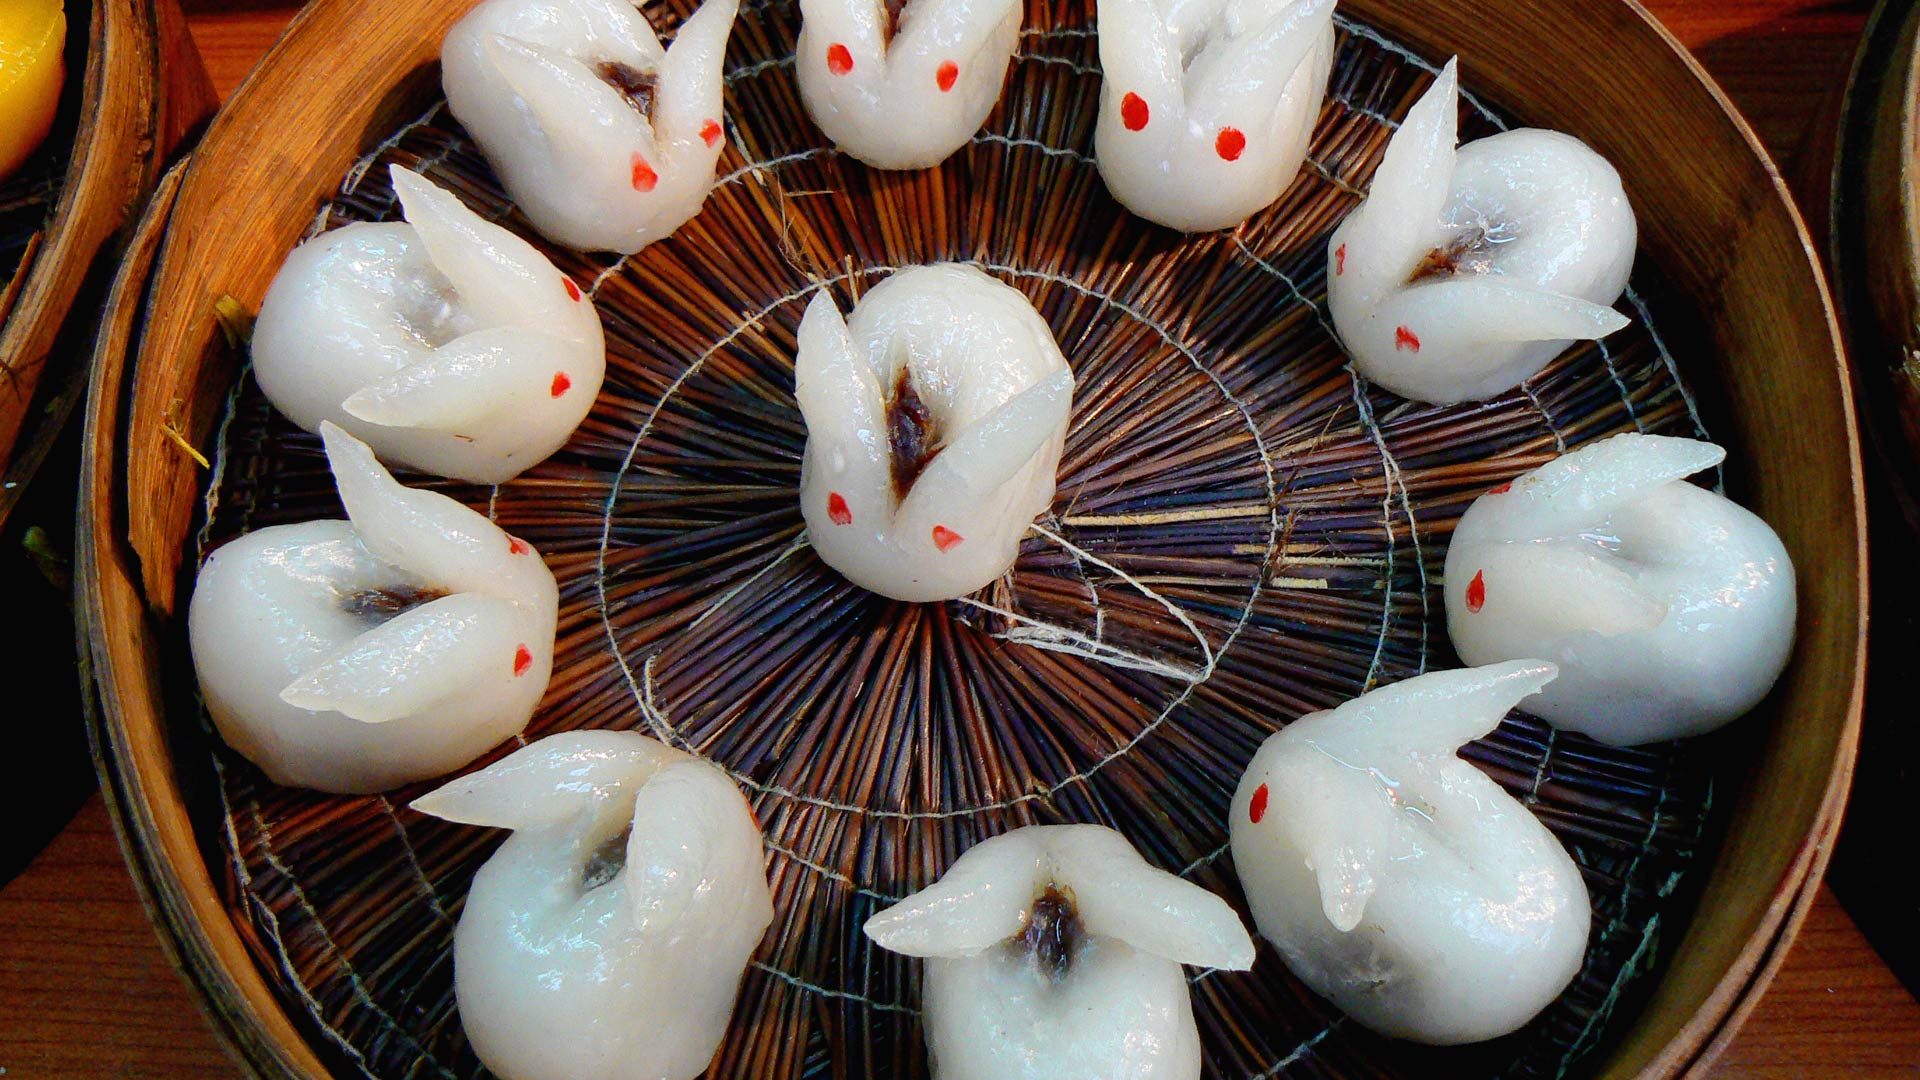 عکس بک گراند کیوت از موچی های خرگوش شکل شیرینی مخصوص کشور کره